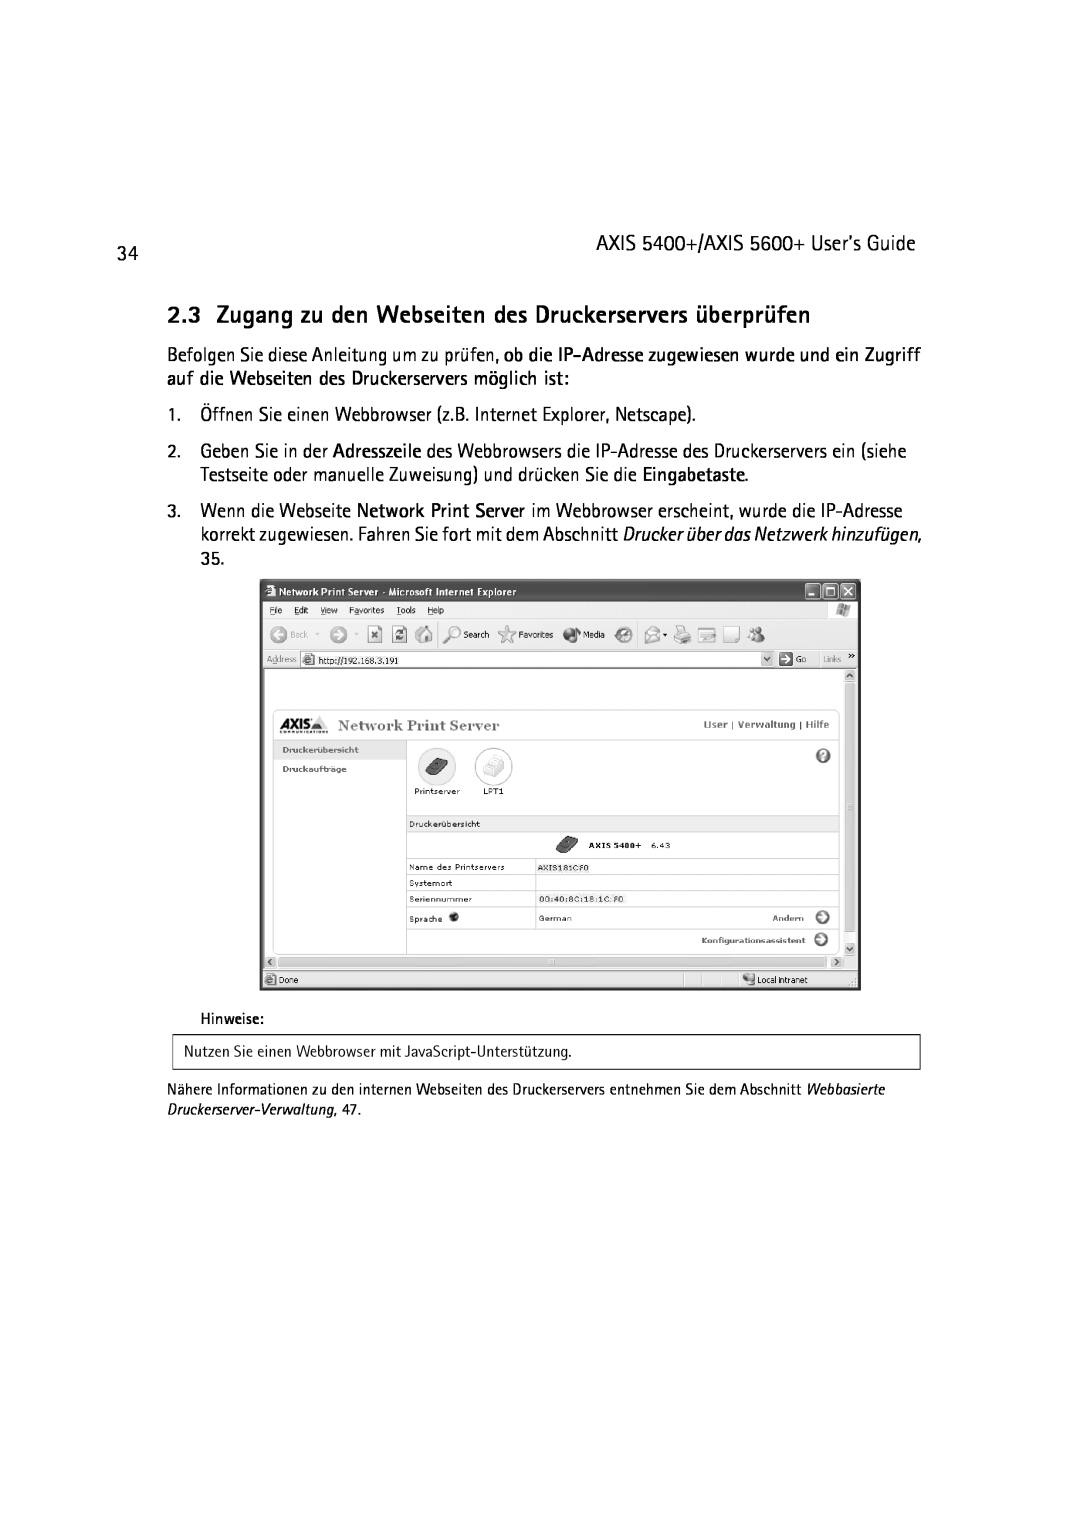 Dell 5600+, 5400+ manual Zugang zu den Webseiten des Druckerservers überprüfen 